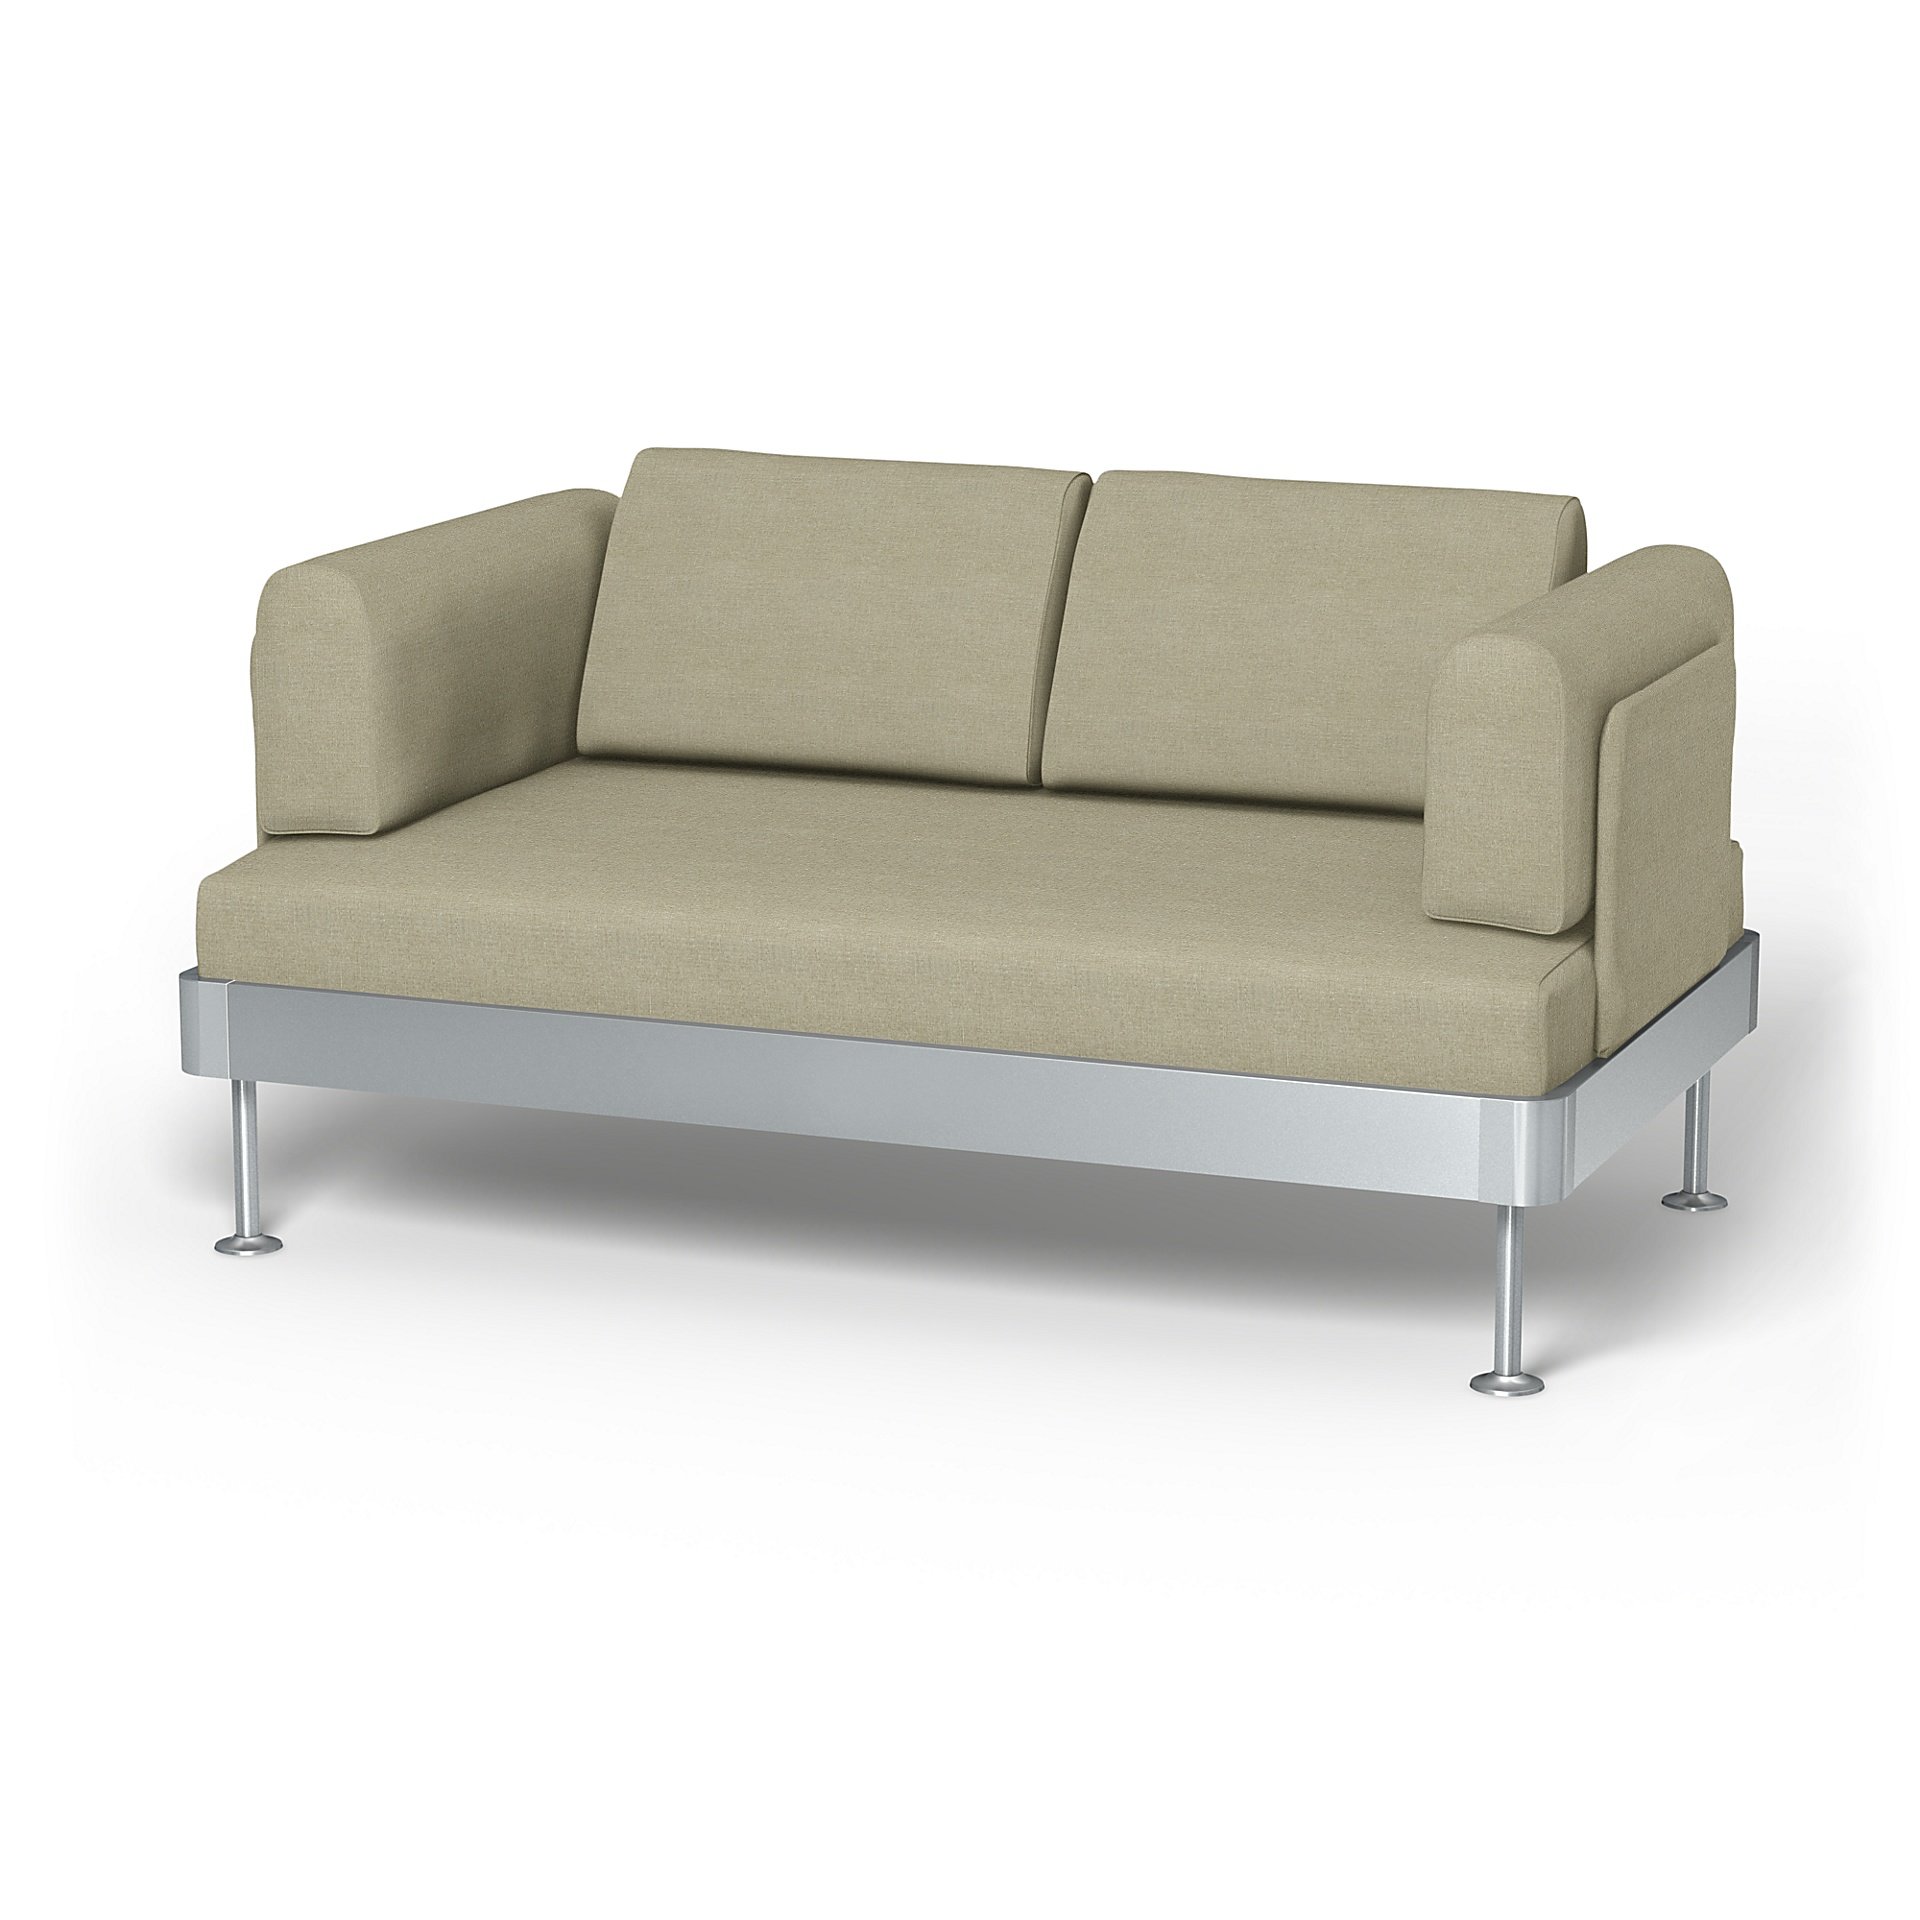 IKEA - Delaktig 2 Seater Sofa Cover, Pebble, Linen - Bemz